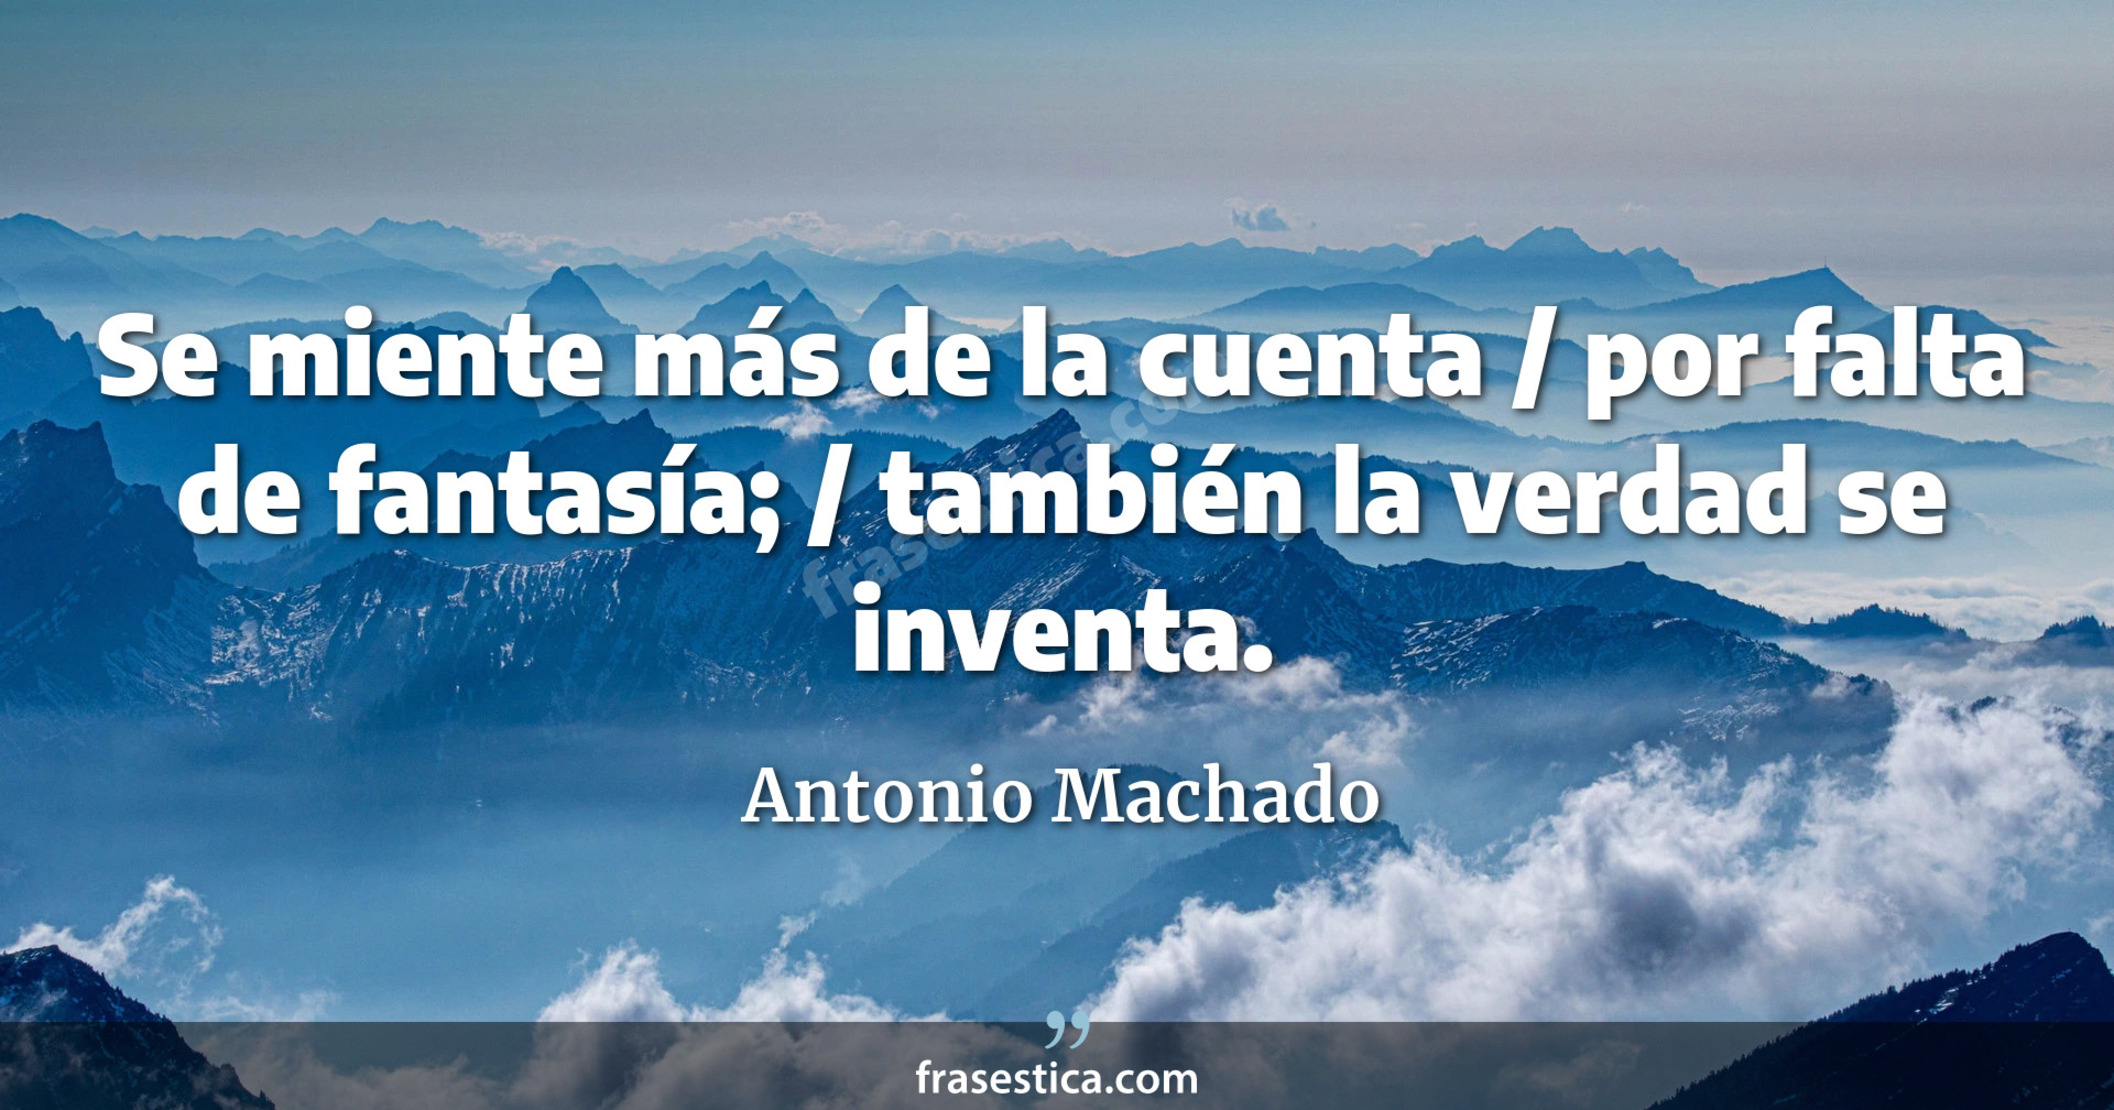 Se miente más de la cuenta / por falta de fantasía; / también la verdad se inventa. - Antonio Machado